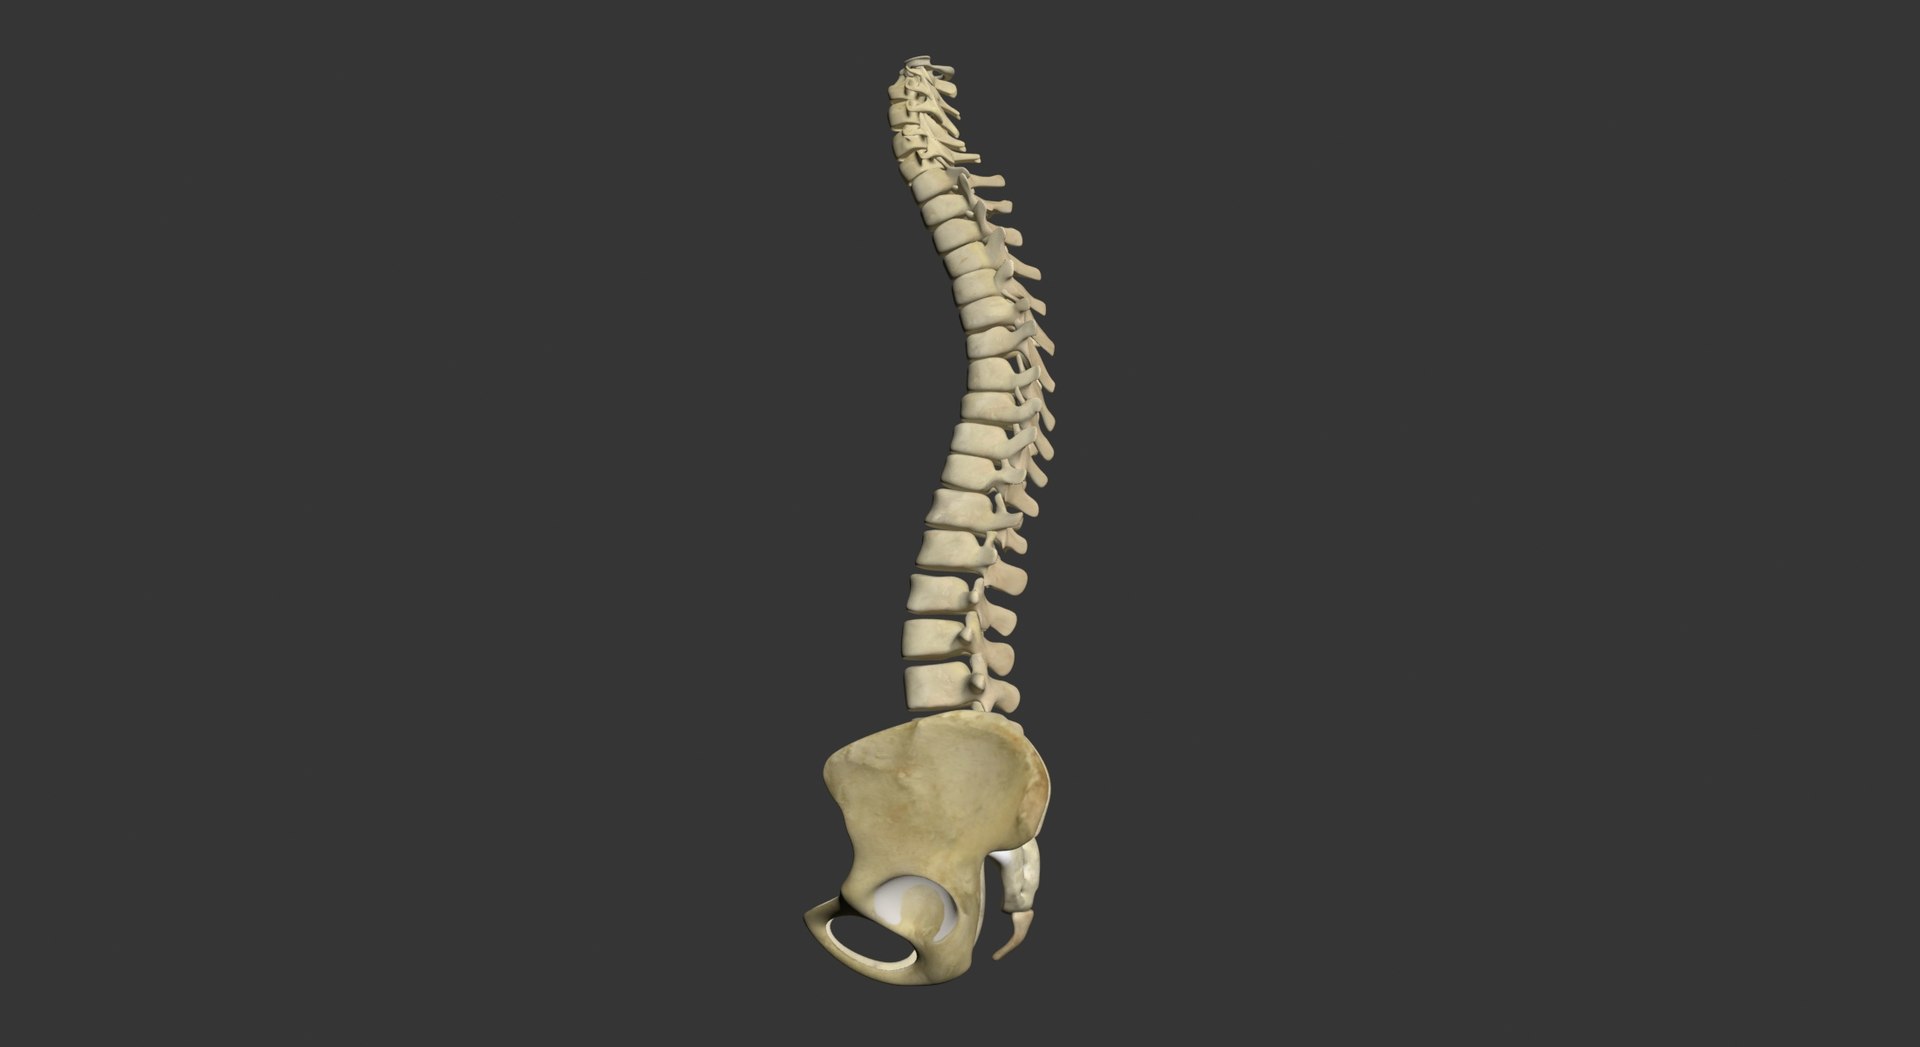 Human Spine 3d Model